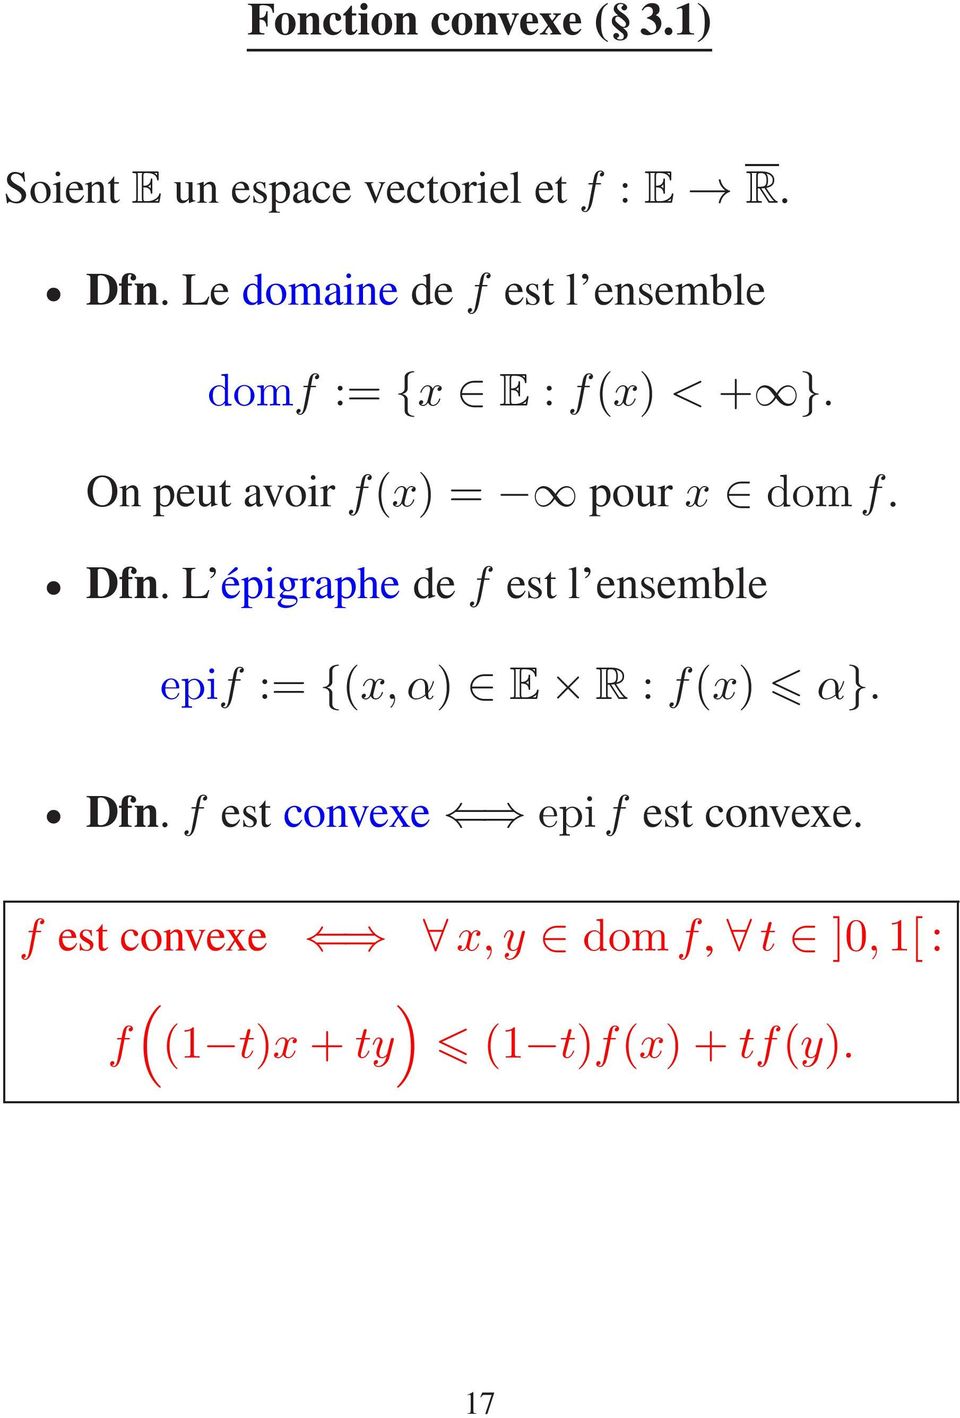 On peut avoirf(x) = pour x domf. Dfn.